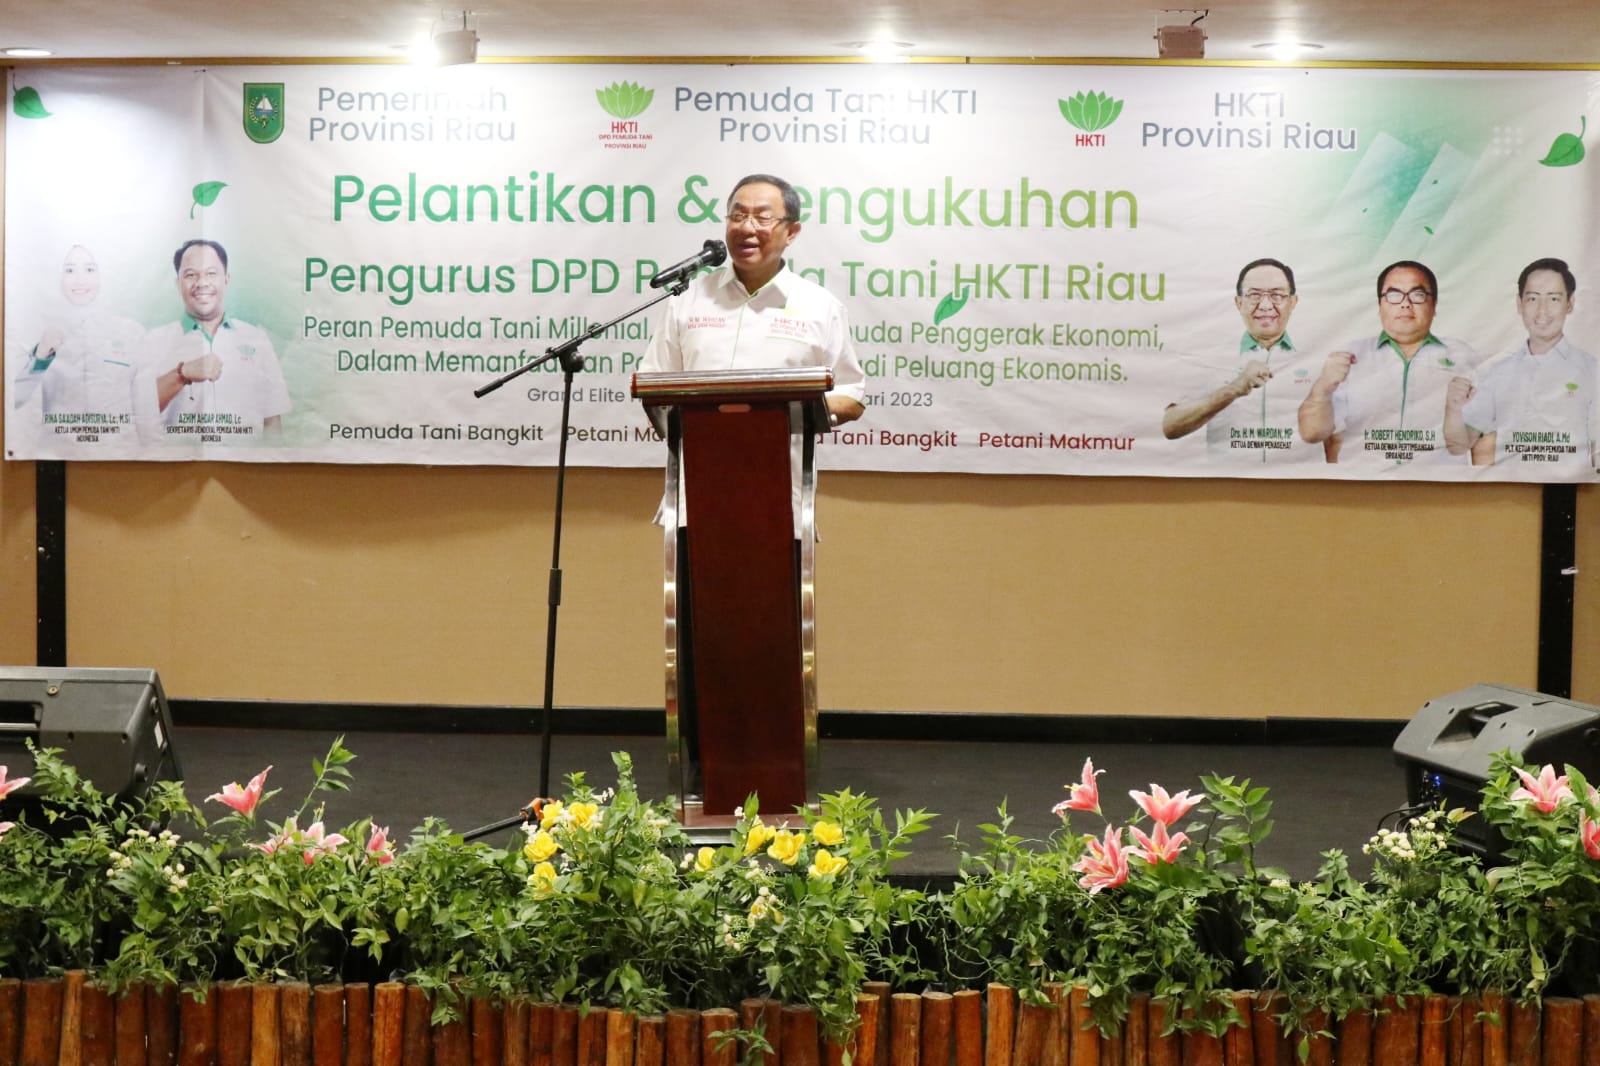 Pengurus DPD Pemuda Tani Riau Resmi Dikukuhkan, ketua HKTI Riau HM Wardan: Buatlah Program Kerja yang Simpel 